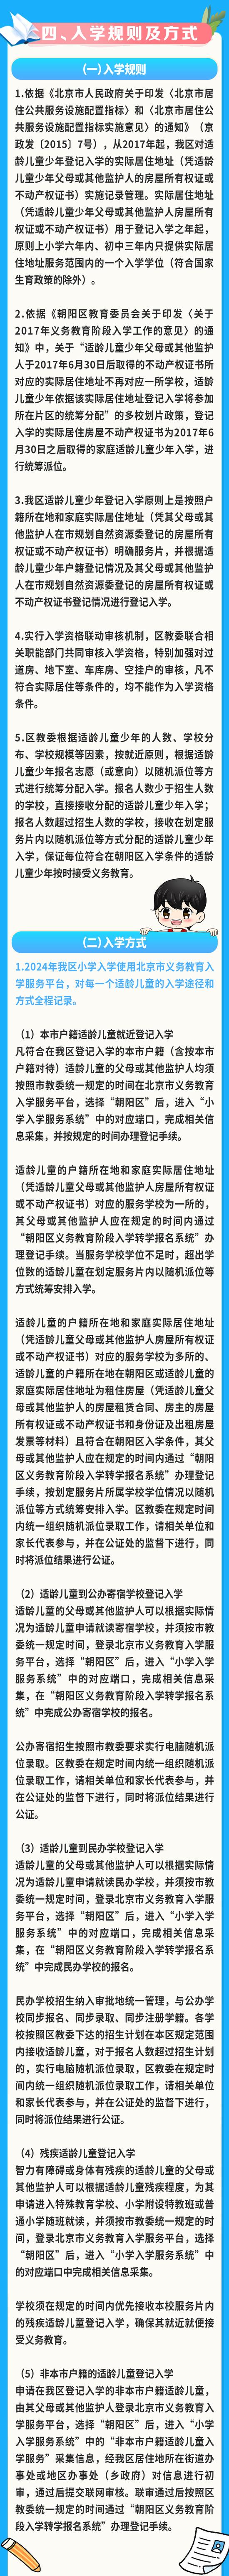 北京市朝阳区关于2024年义务教育阶段入学工作的意见